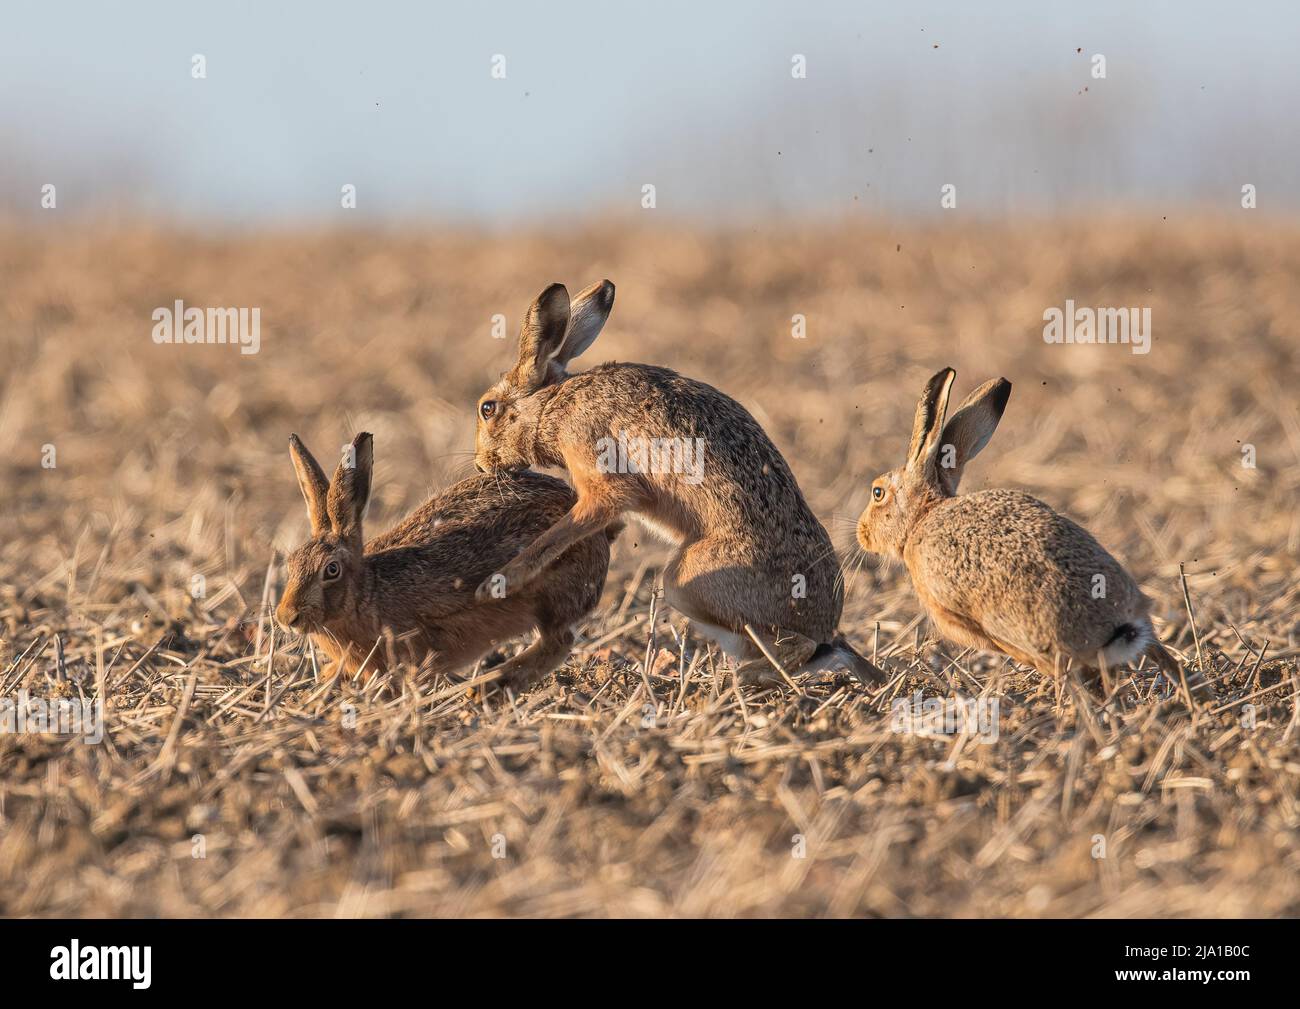 Liebesdreieck, drei Mad March Hasen, die Balzverhalten zeigen, wobei ein Weibchen die ganze Aufmerksamkeit von den Männchen erhält. Suffolk, Großbritannien Stockfoto